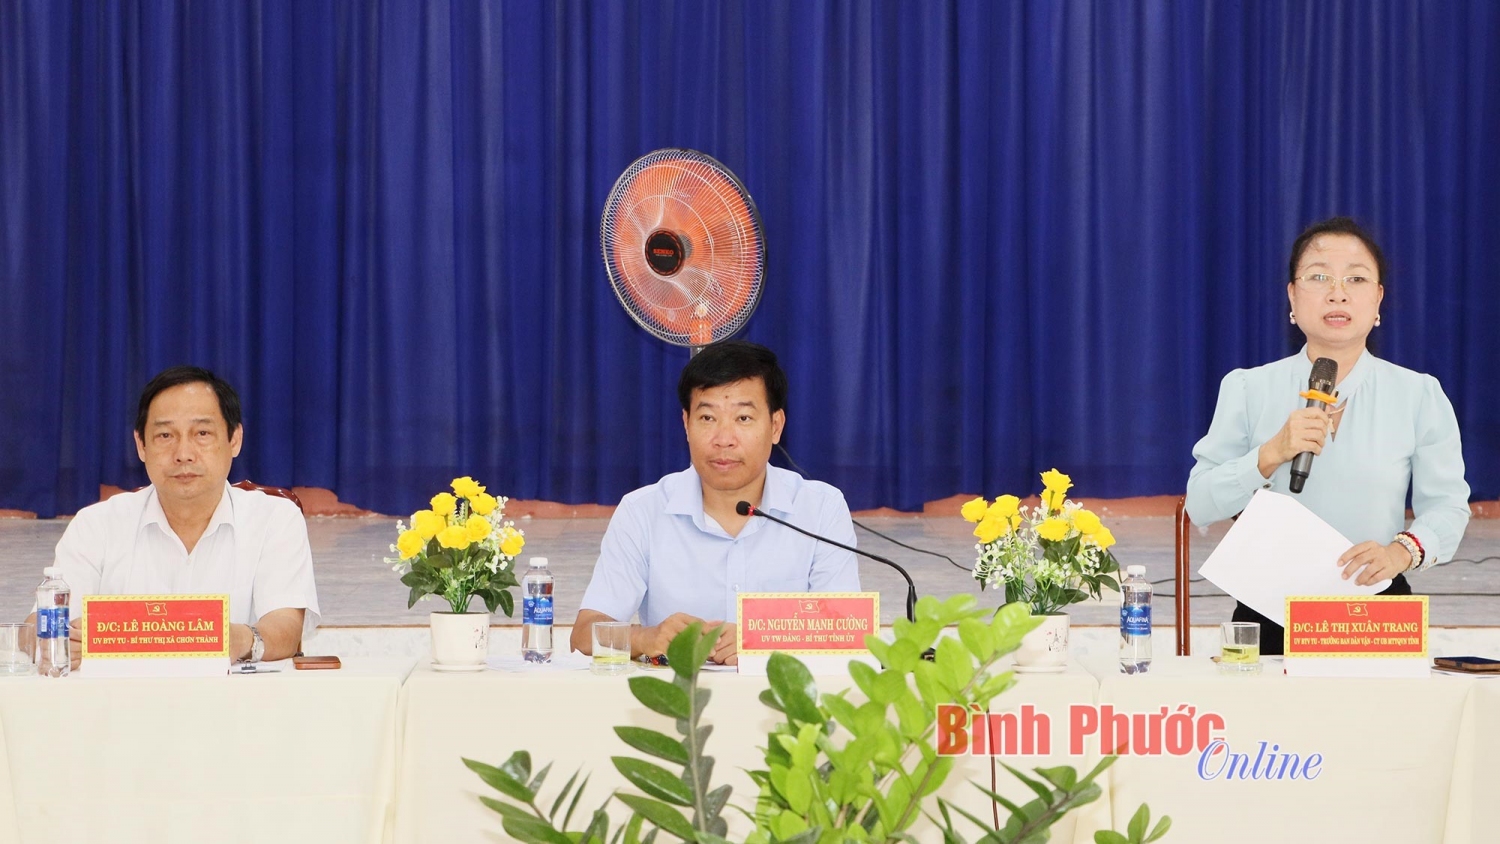 Đồng chí Lê Thị Xuân Trang, Ủy viên Ban Thường vụ, Trưởng ban Dân vận Tỉnh ủy, Chủ tịch Ủy ban MTTQ Việt Nam tỉnh phát biểu tại buổi làm việc